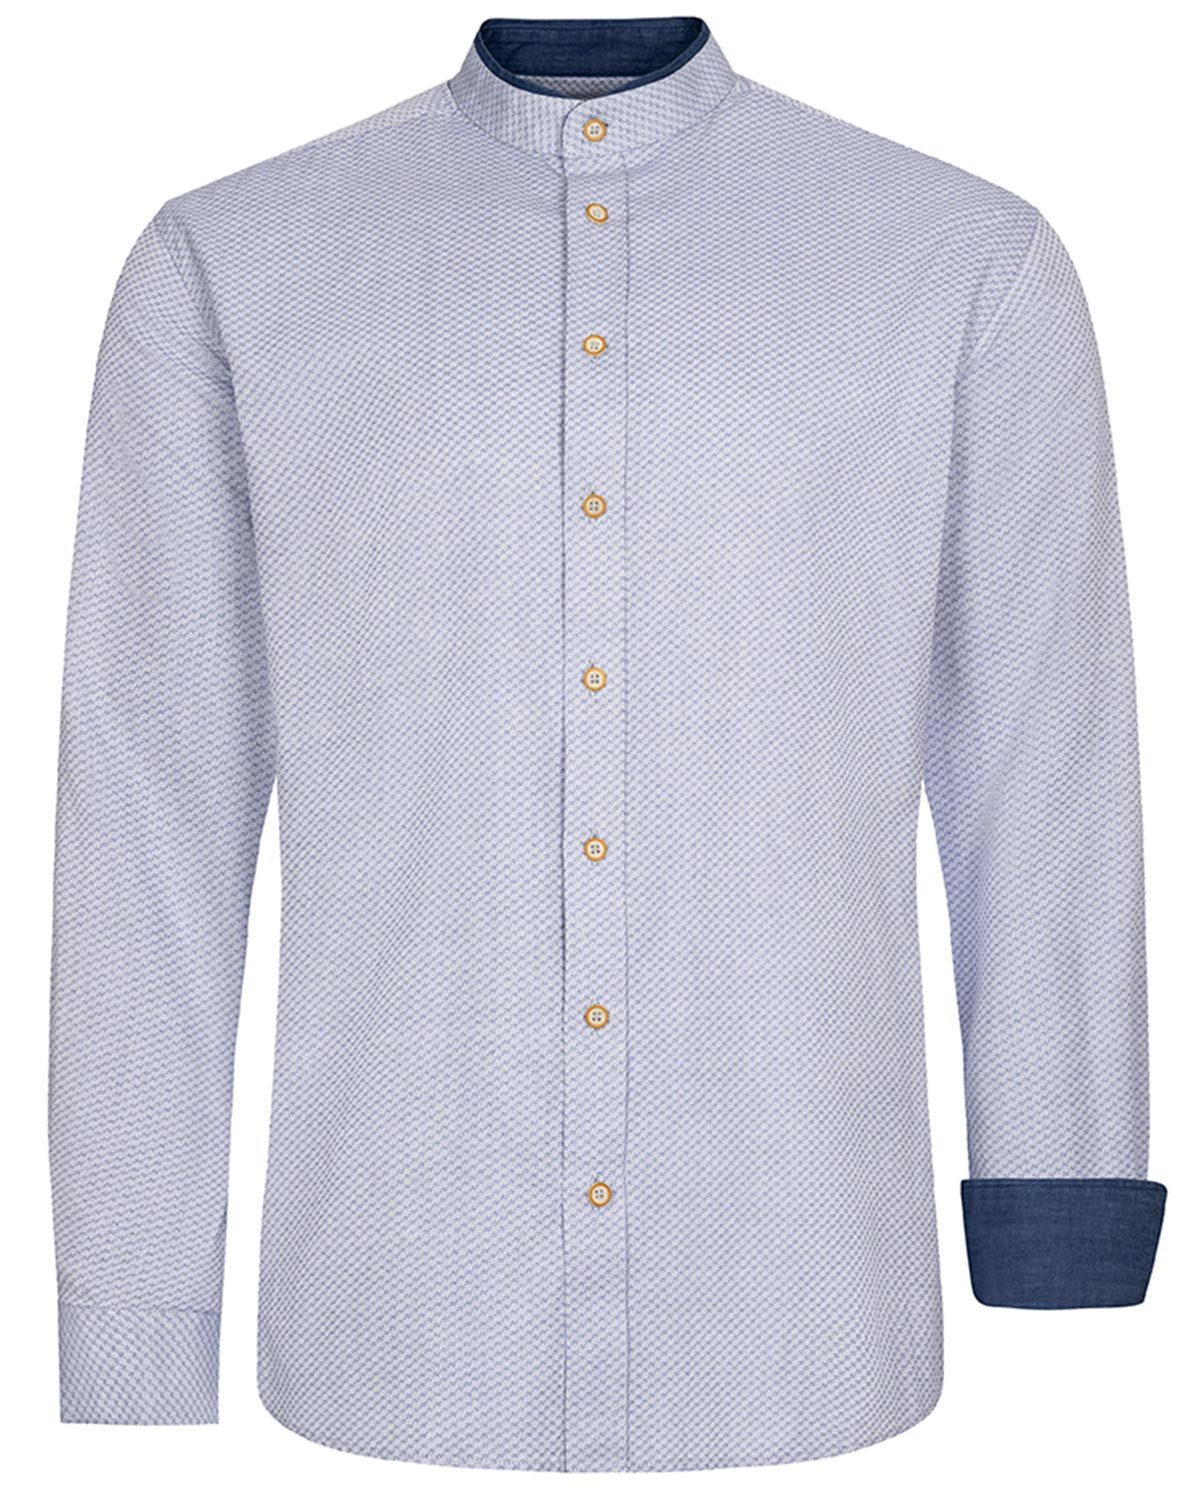 Maddox Trachtenhemd Trachtenhemd mit Stehkragen - Hemd-54, Grau